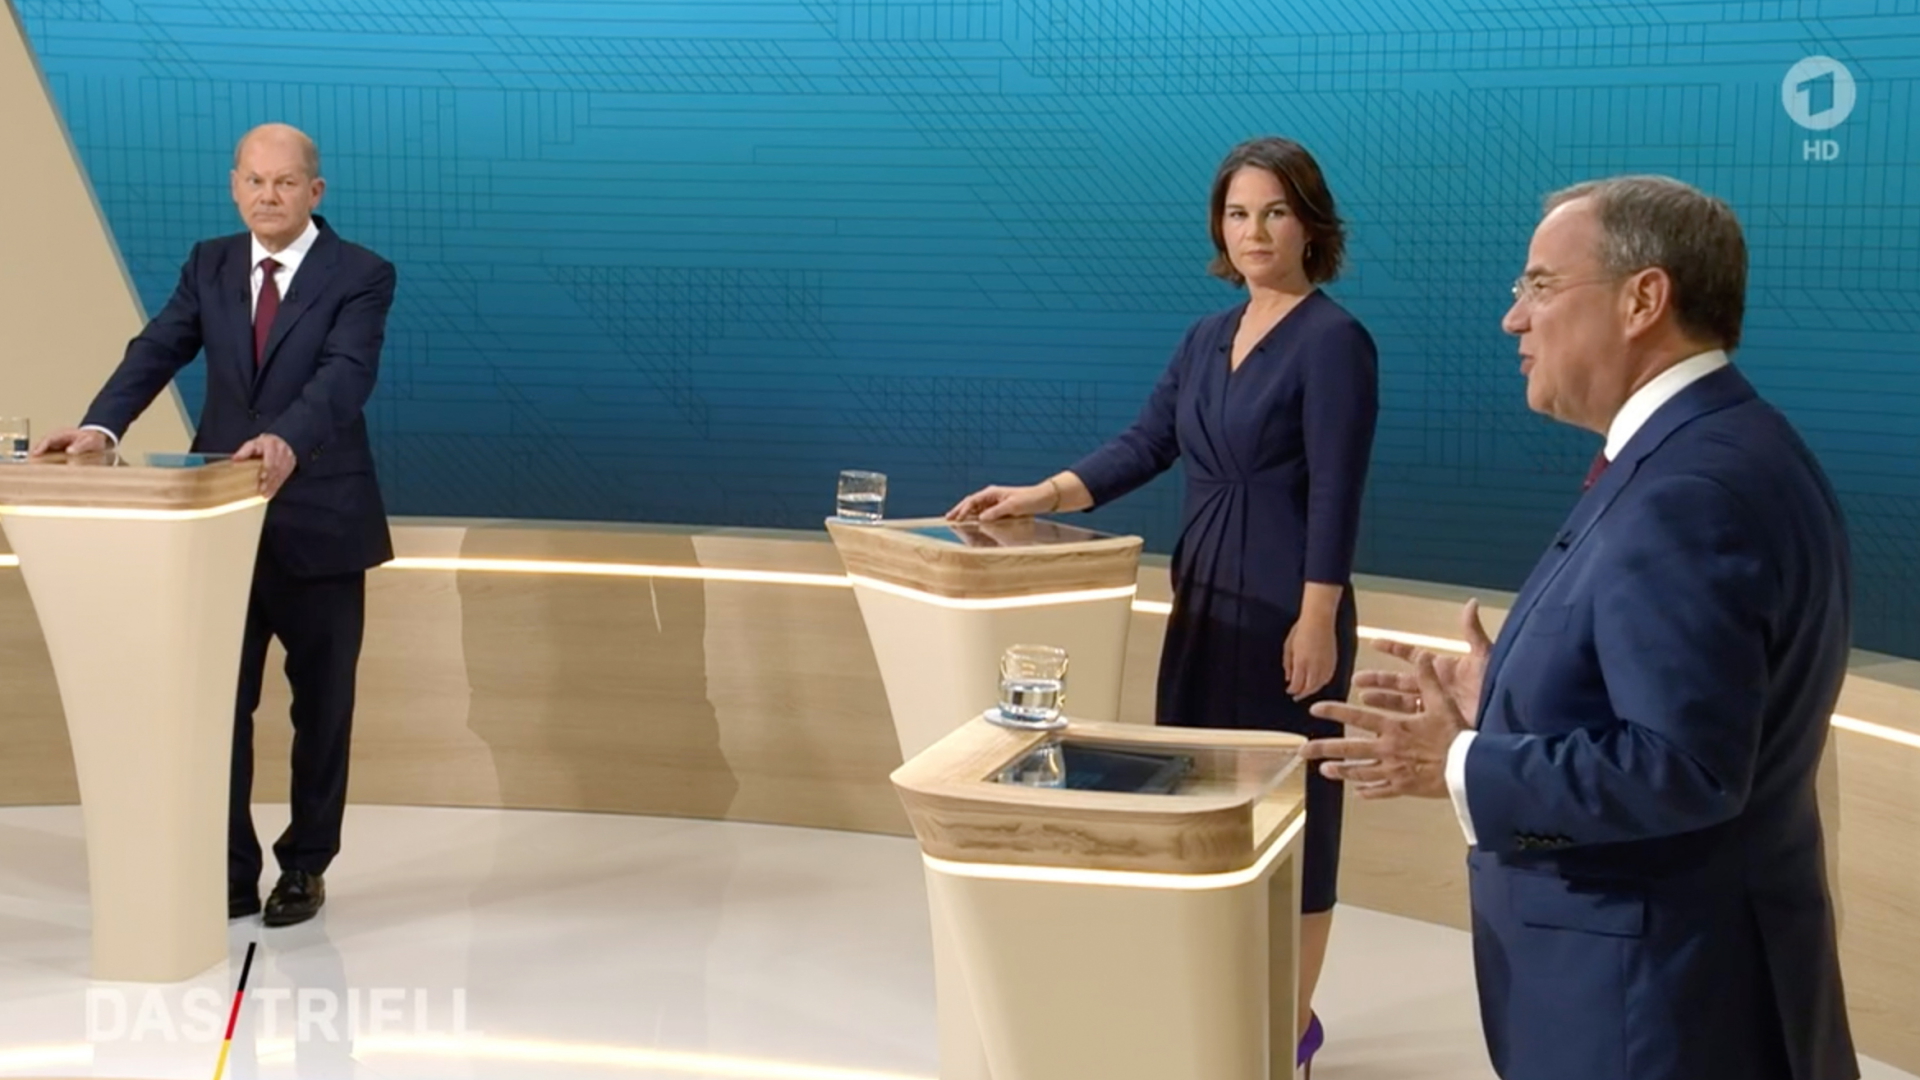 Kanzlerkandidat Olaf Scholz, Kanzlerkandidatin Annalena Baerbock, und Kanzlerkandidat Armin Laschet reden miteinander im Fernsehstudio | dpa